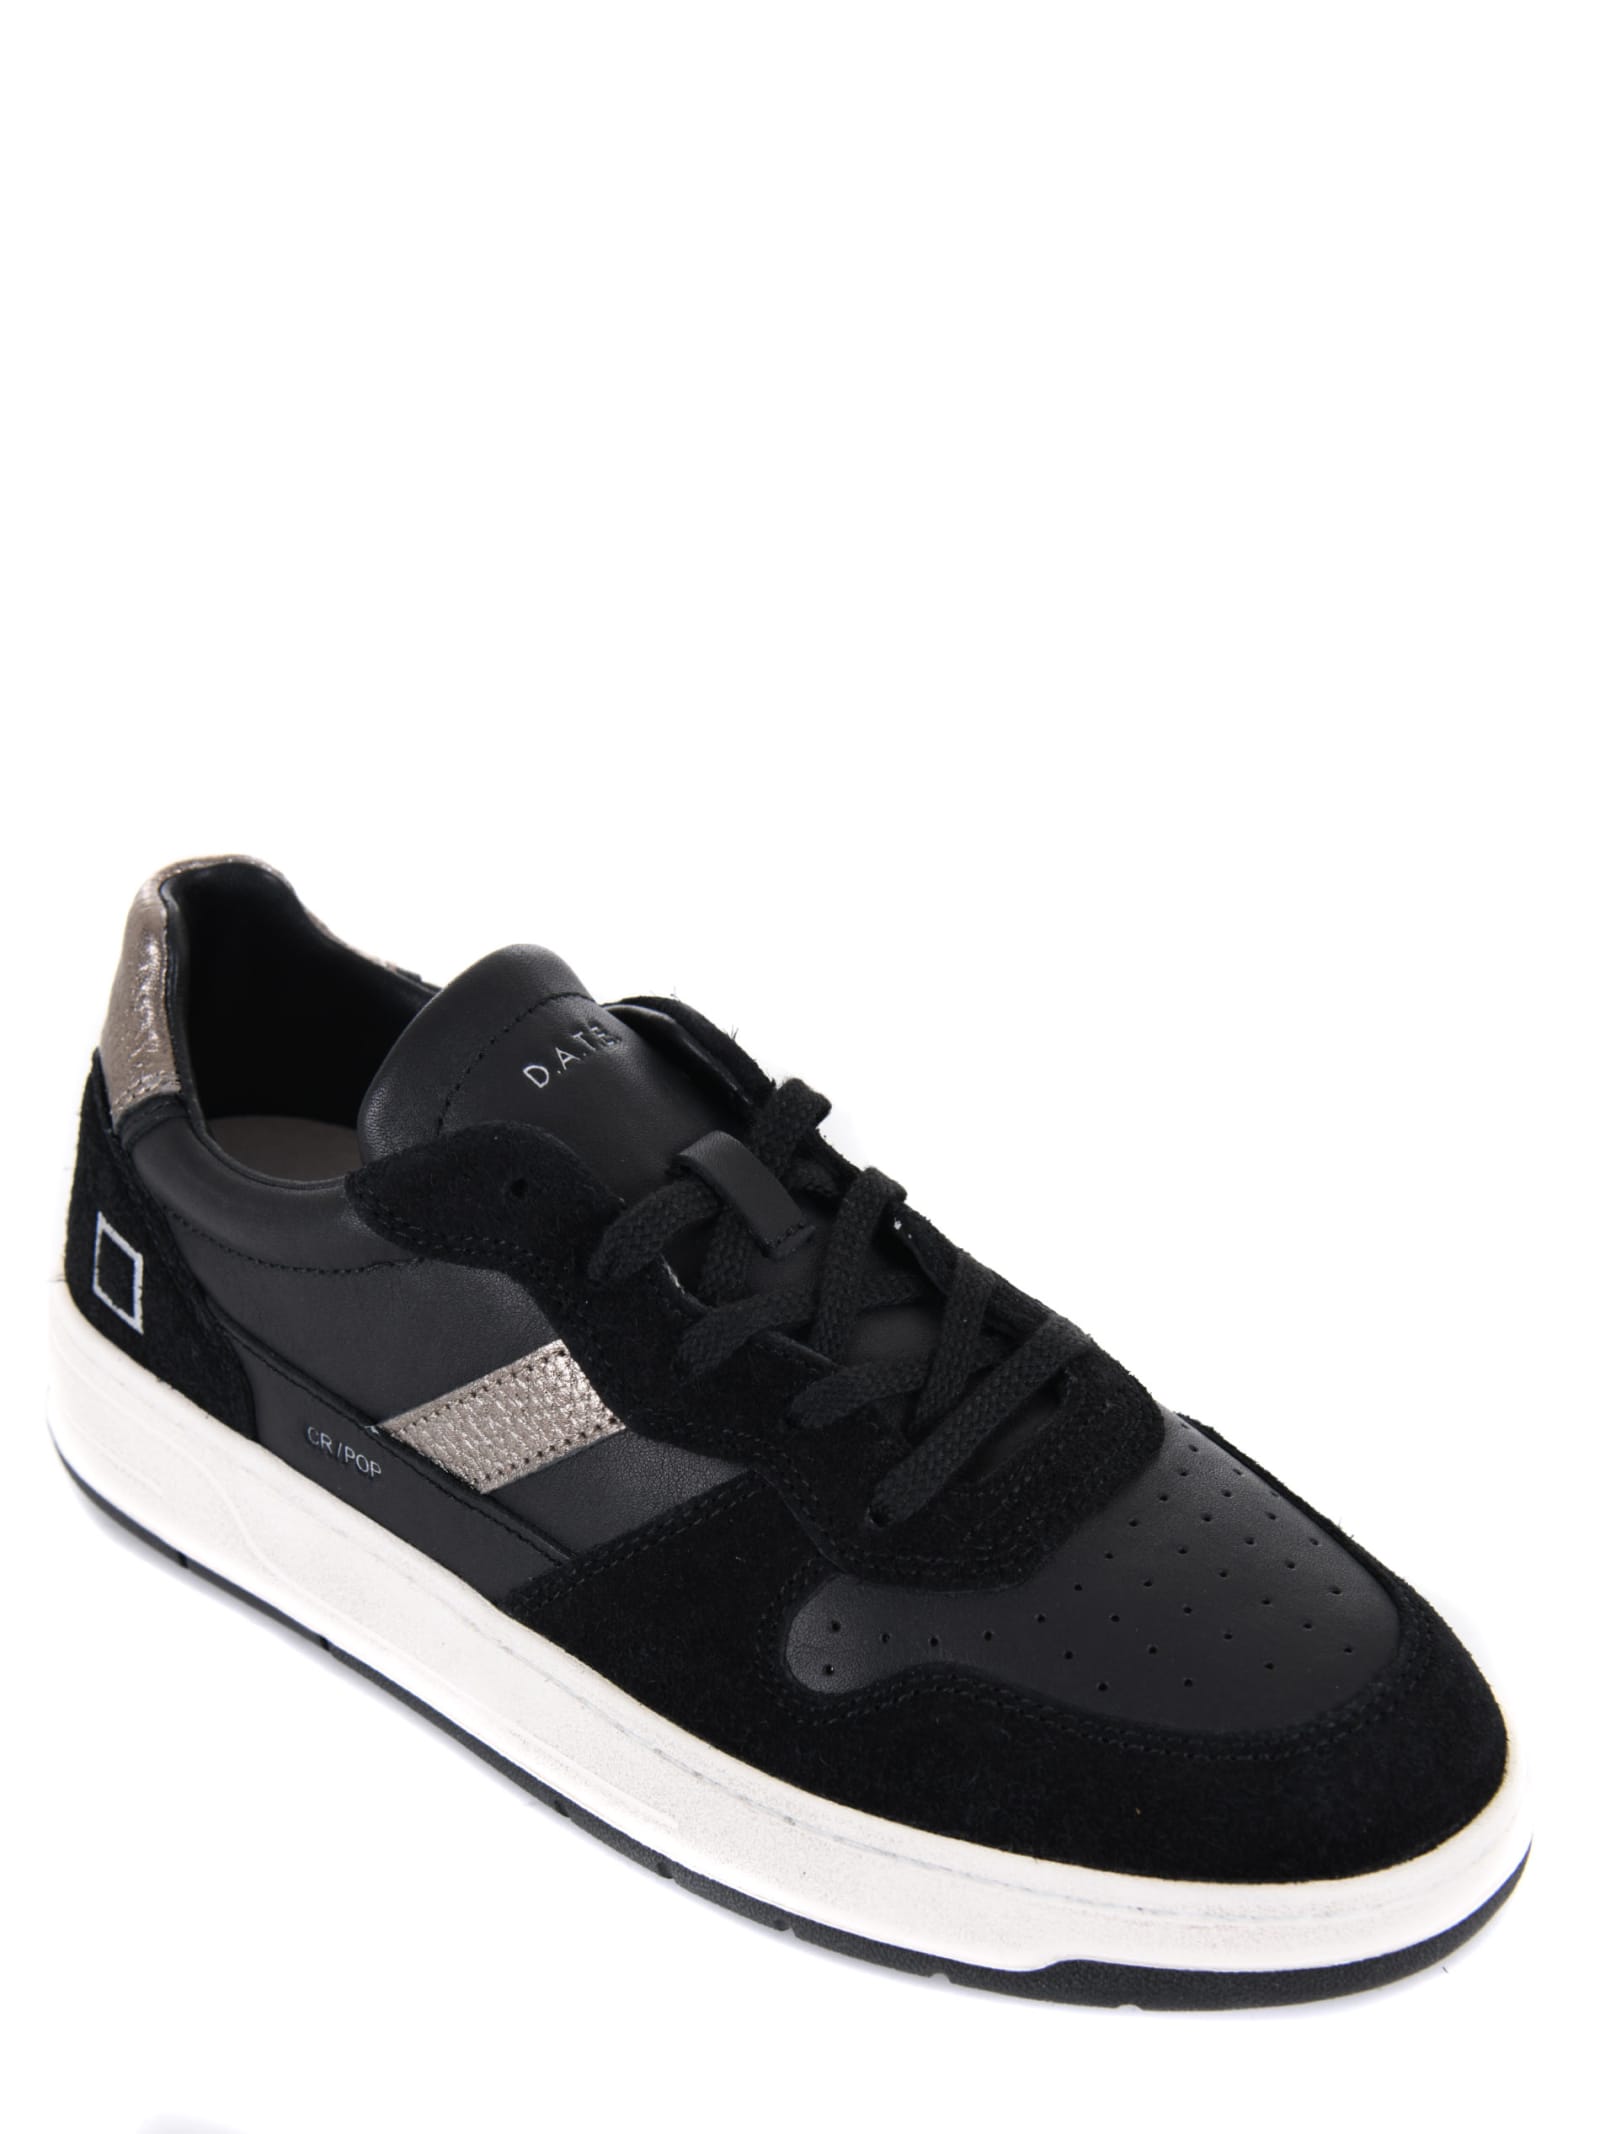 Shop Date Mens Sneakers D.a.t.e. In Black